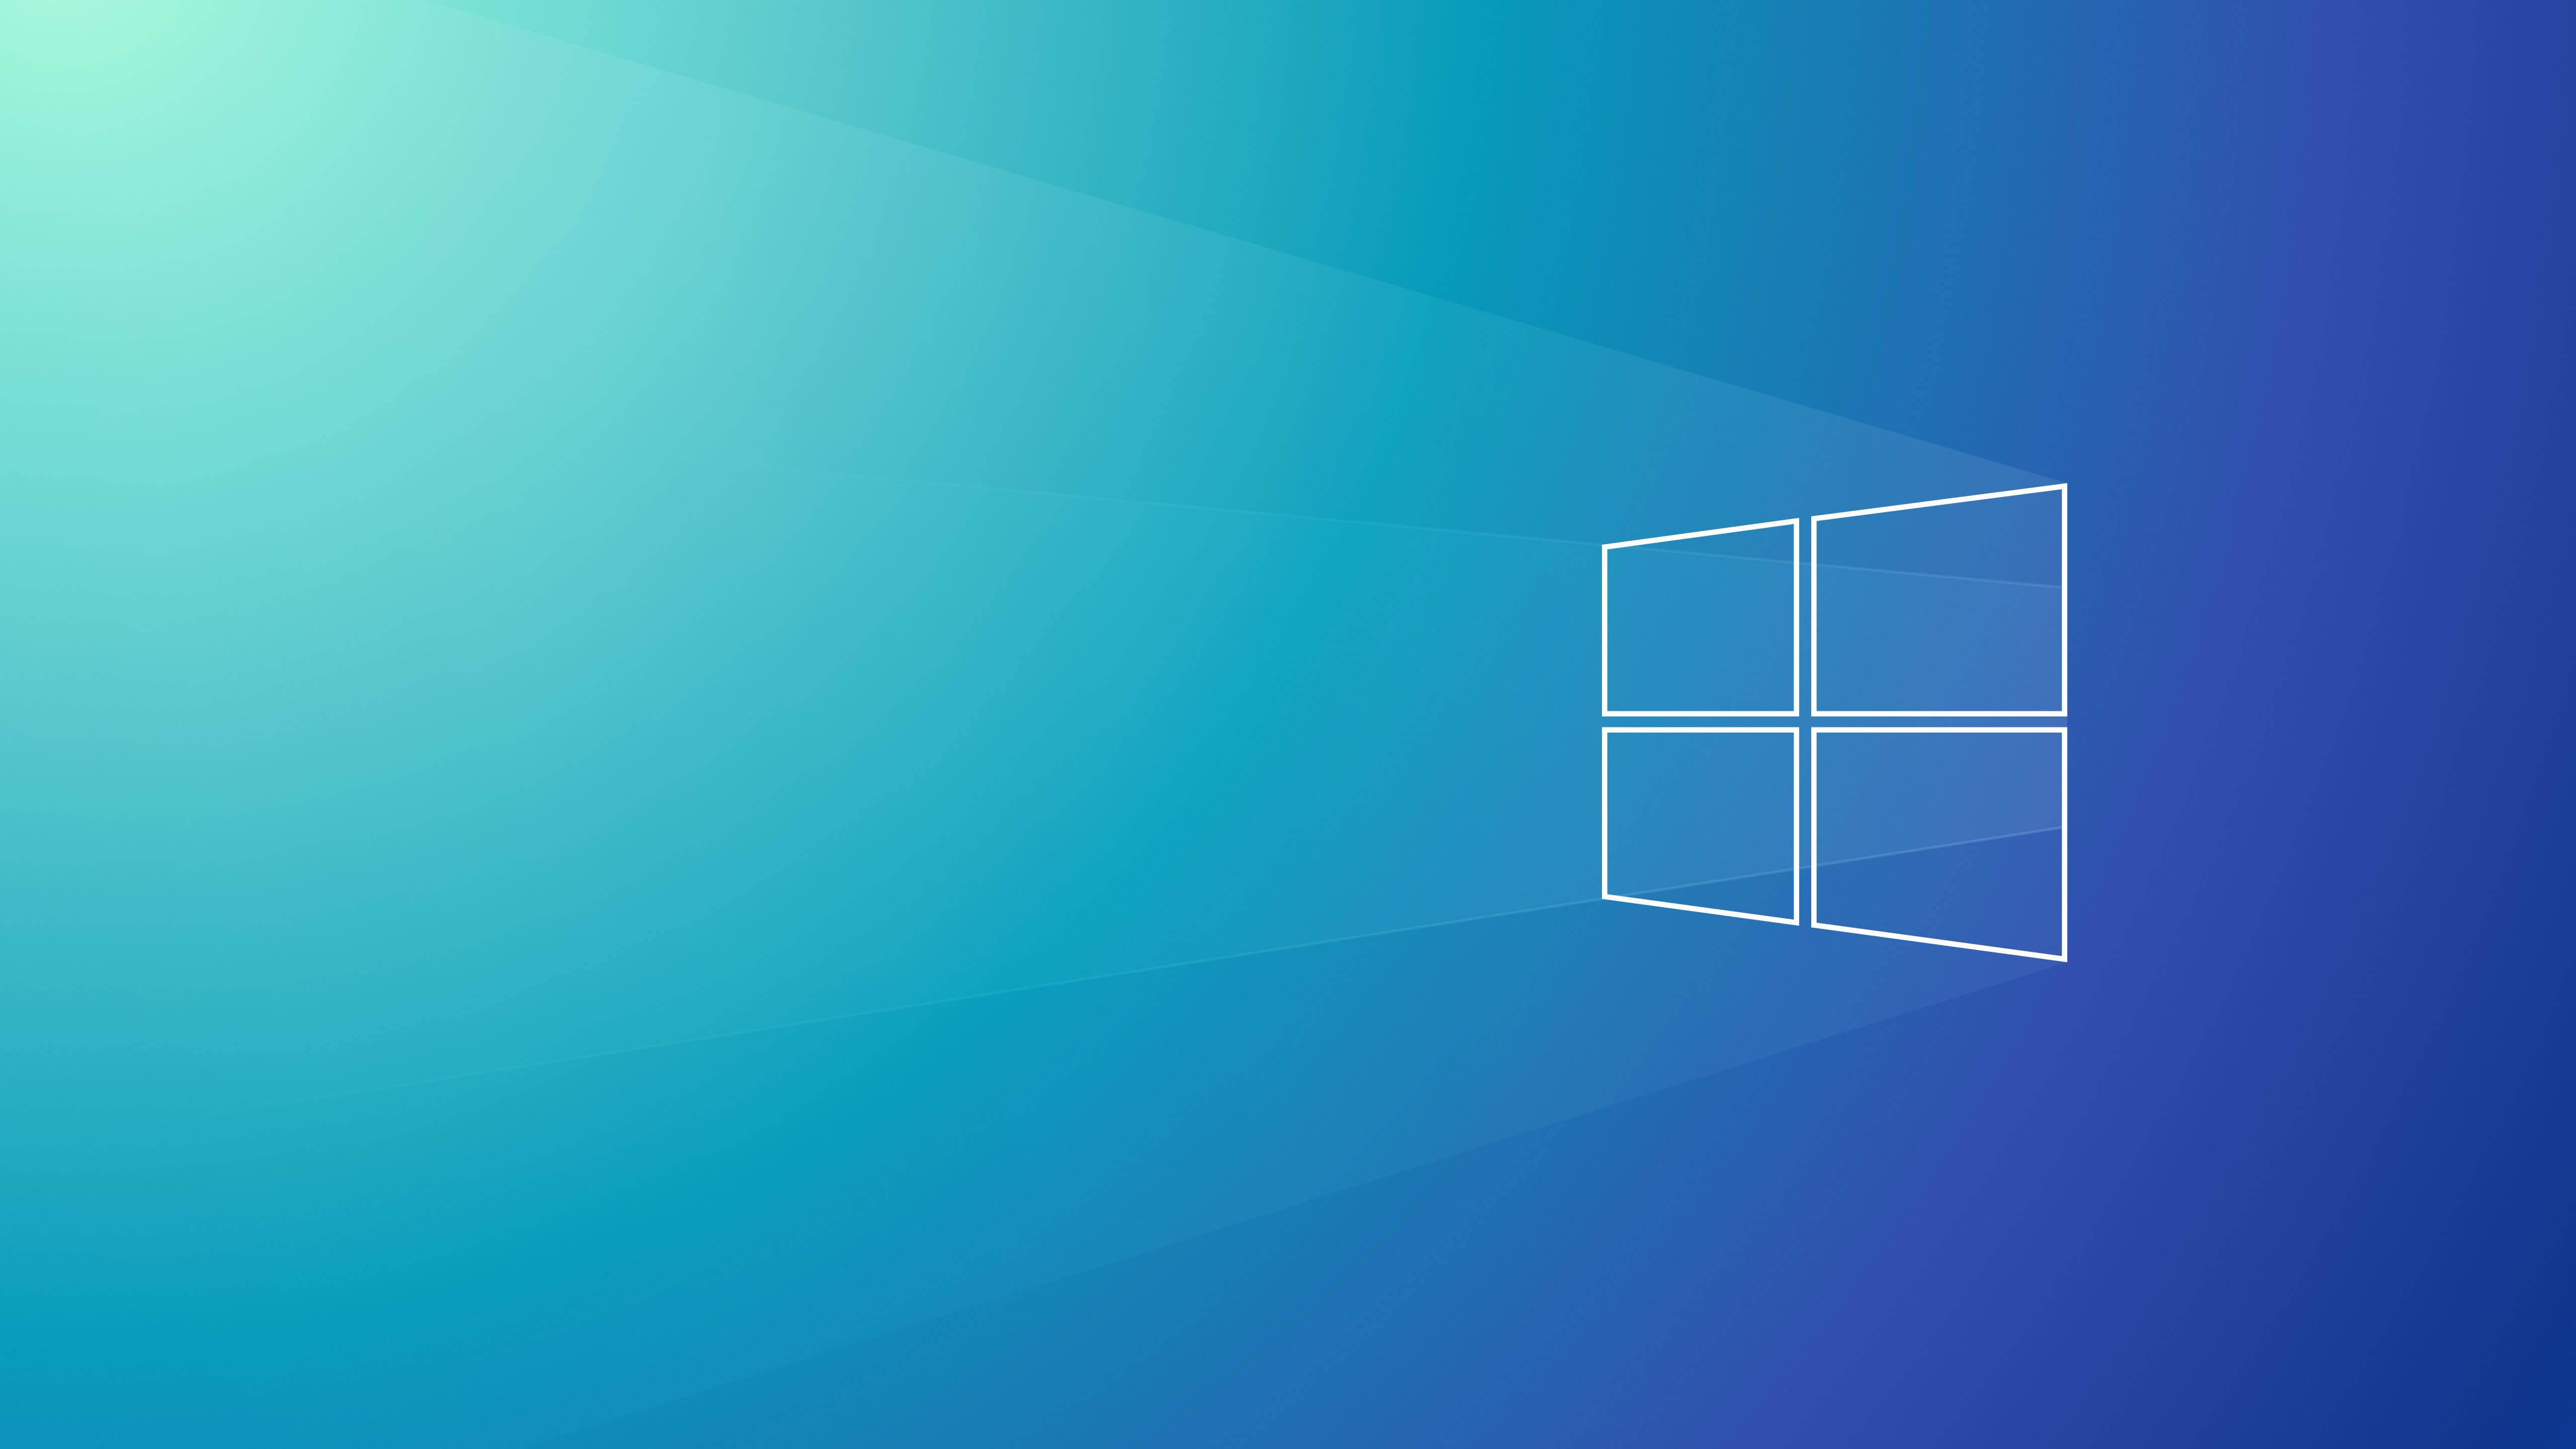 Tổng hợp 50 hình nền win 10 đẹp nhất  Hình nền máy tính  Windows 10  Windows wallpaper Windows 10 logo